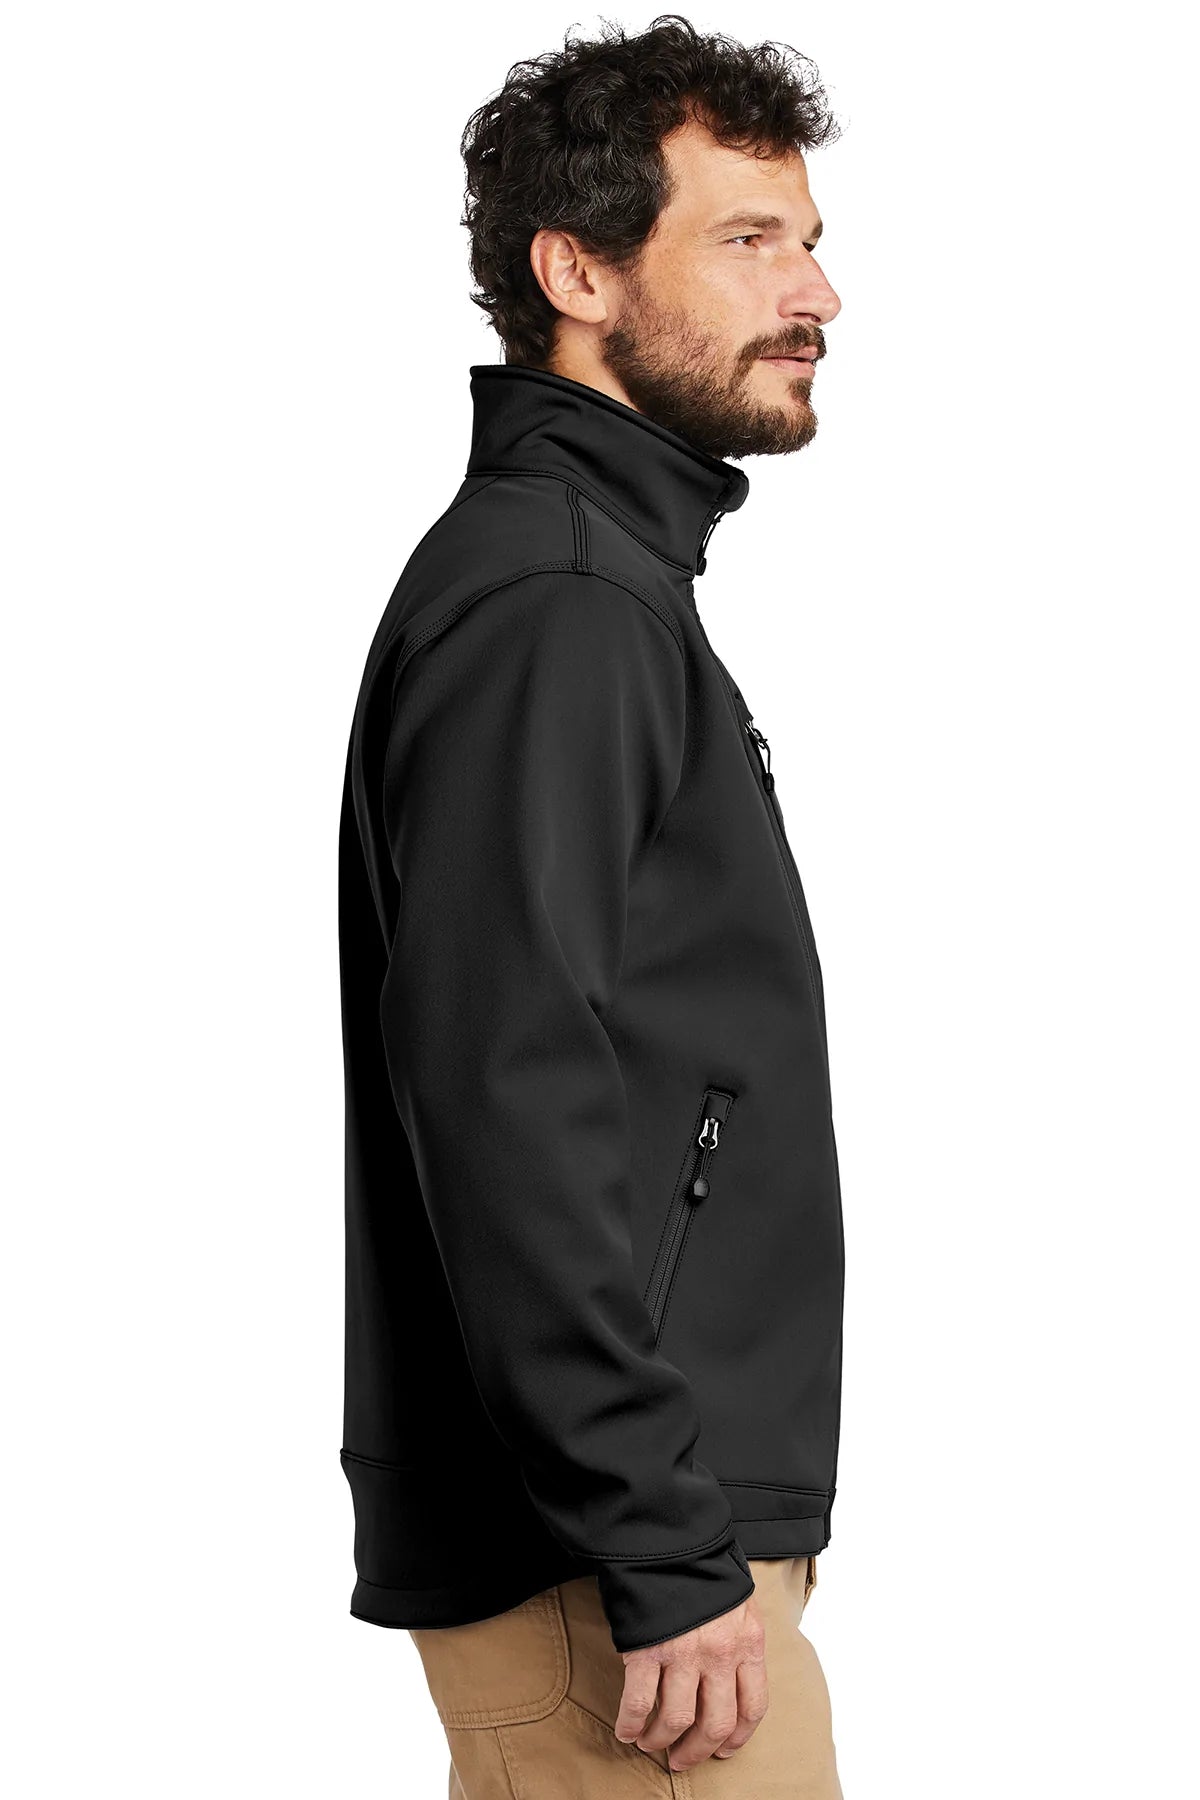 carhartt_ct102199 _black_company_logo_jackets